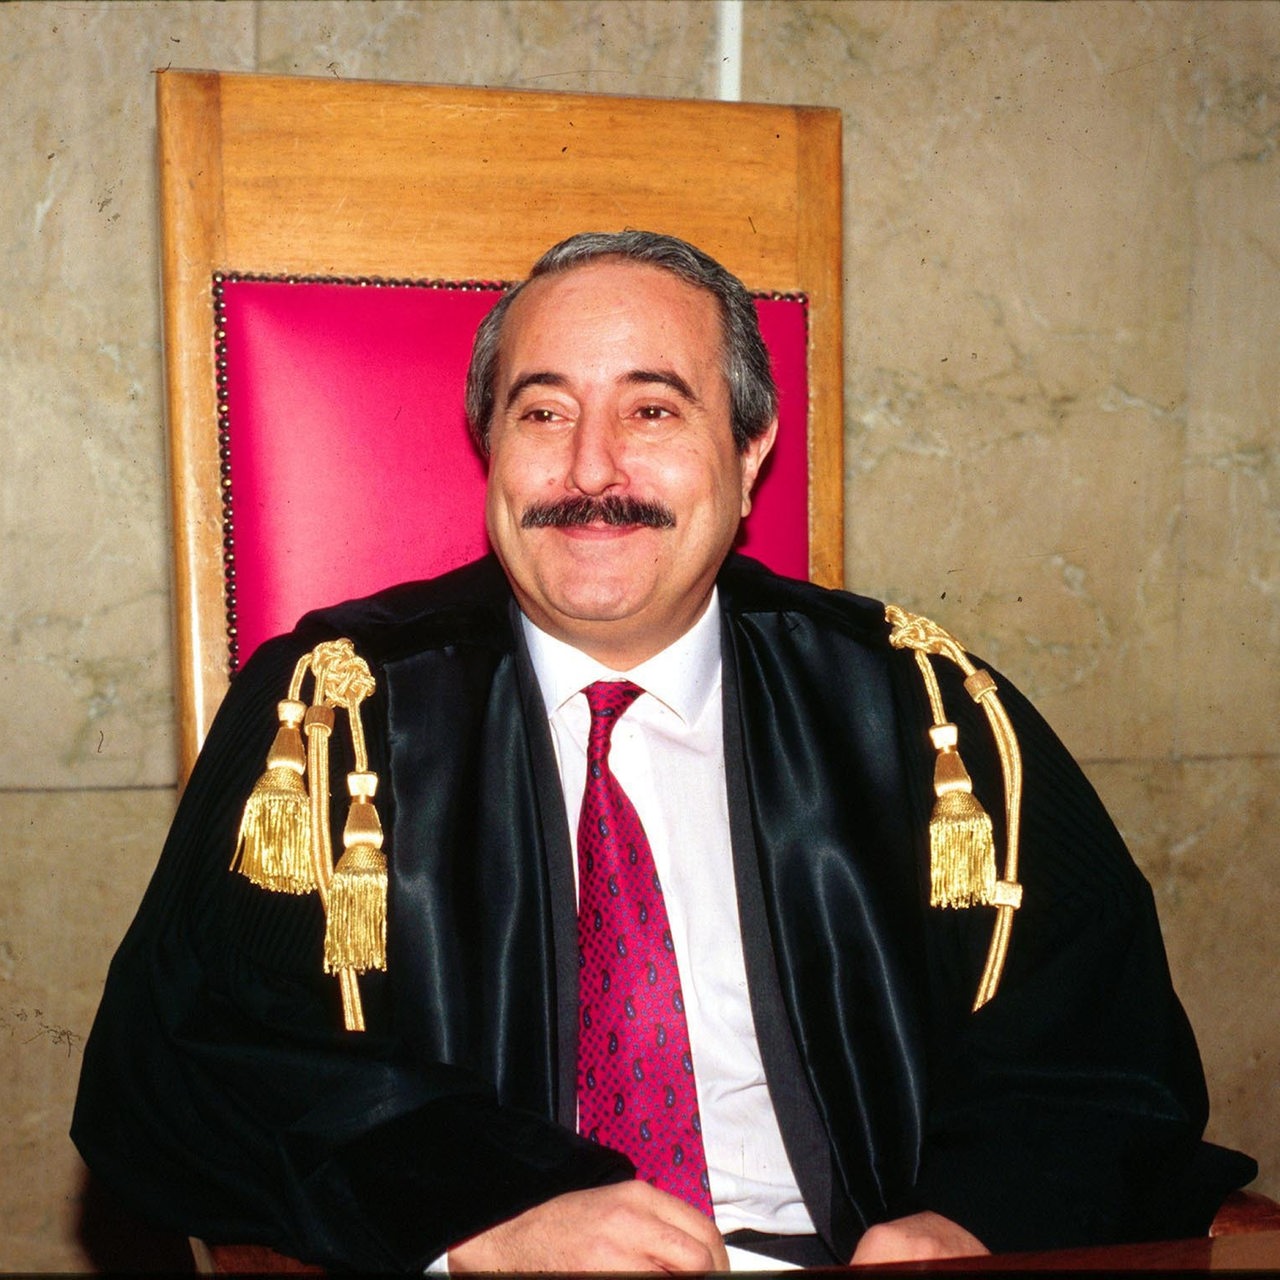 Der Richter und Mafiajäger Giovanni Falcone sitzt lächelnd auf dem Richterstuhl